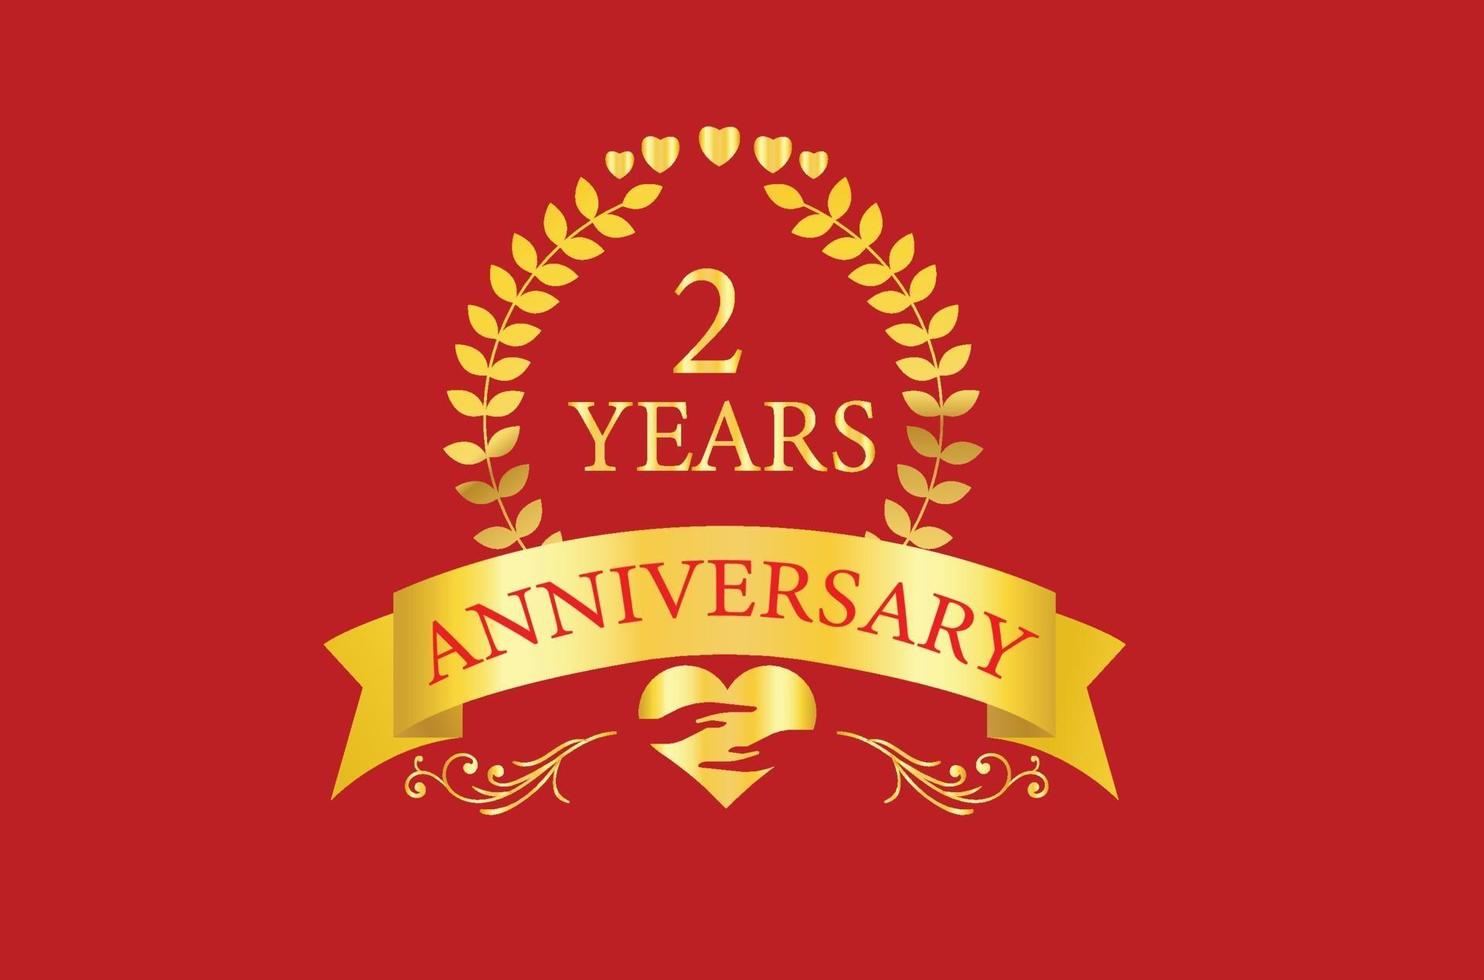 2 years anniversary logo design vector